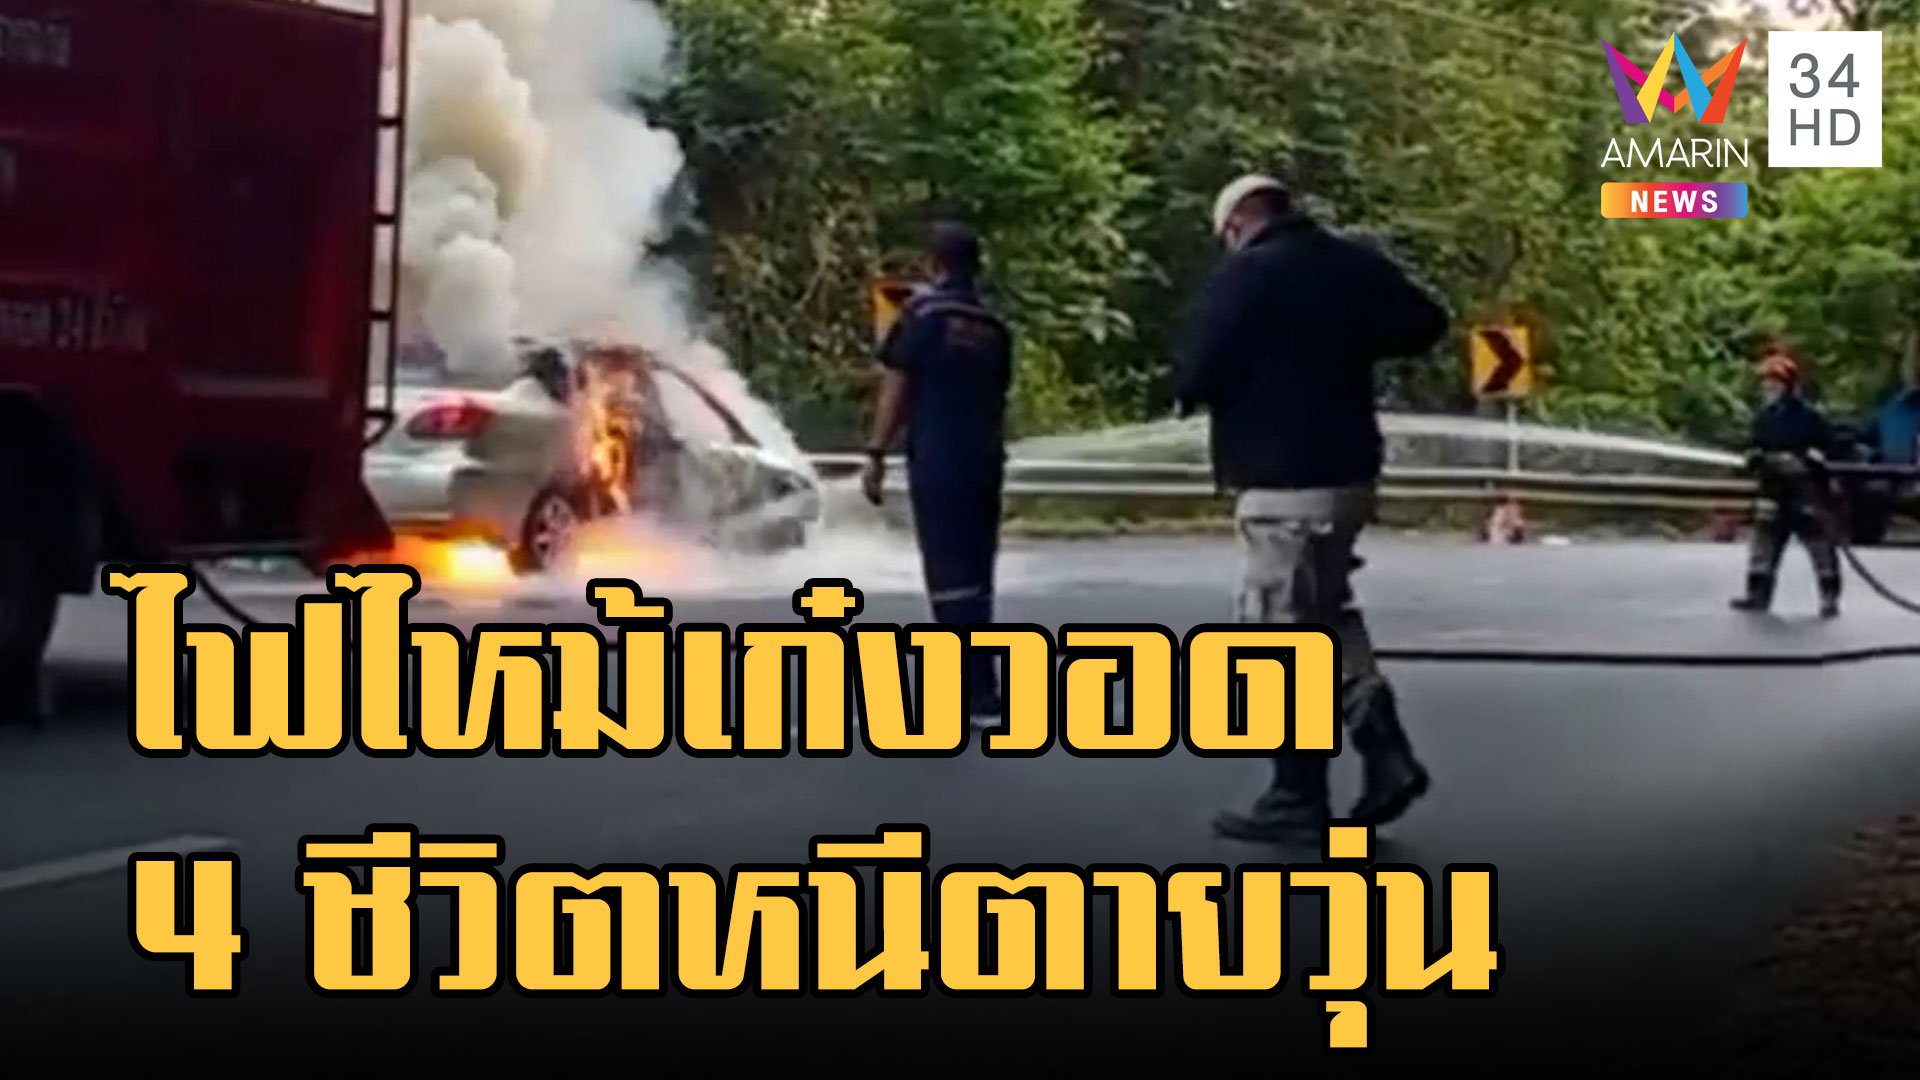 ไฟไหม้เก๋งทำบุญดอยสุเทพ ไฟลุกหนีตายวุ่น | ข่าวอรุณอมรินทร์ | 2 ม.ค. 66 | AMARIN TVHD34